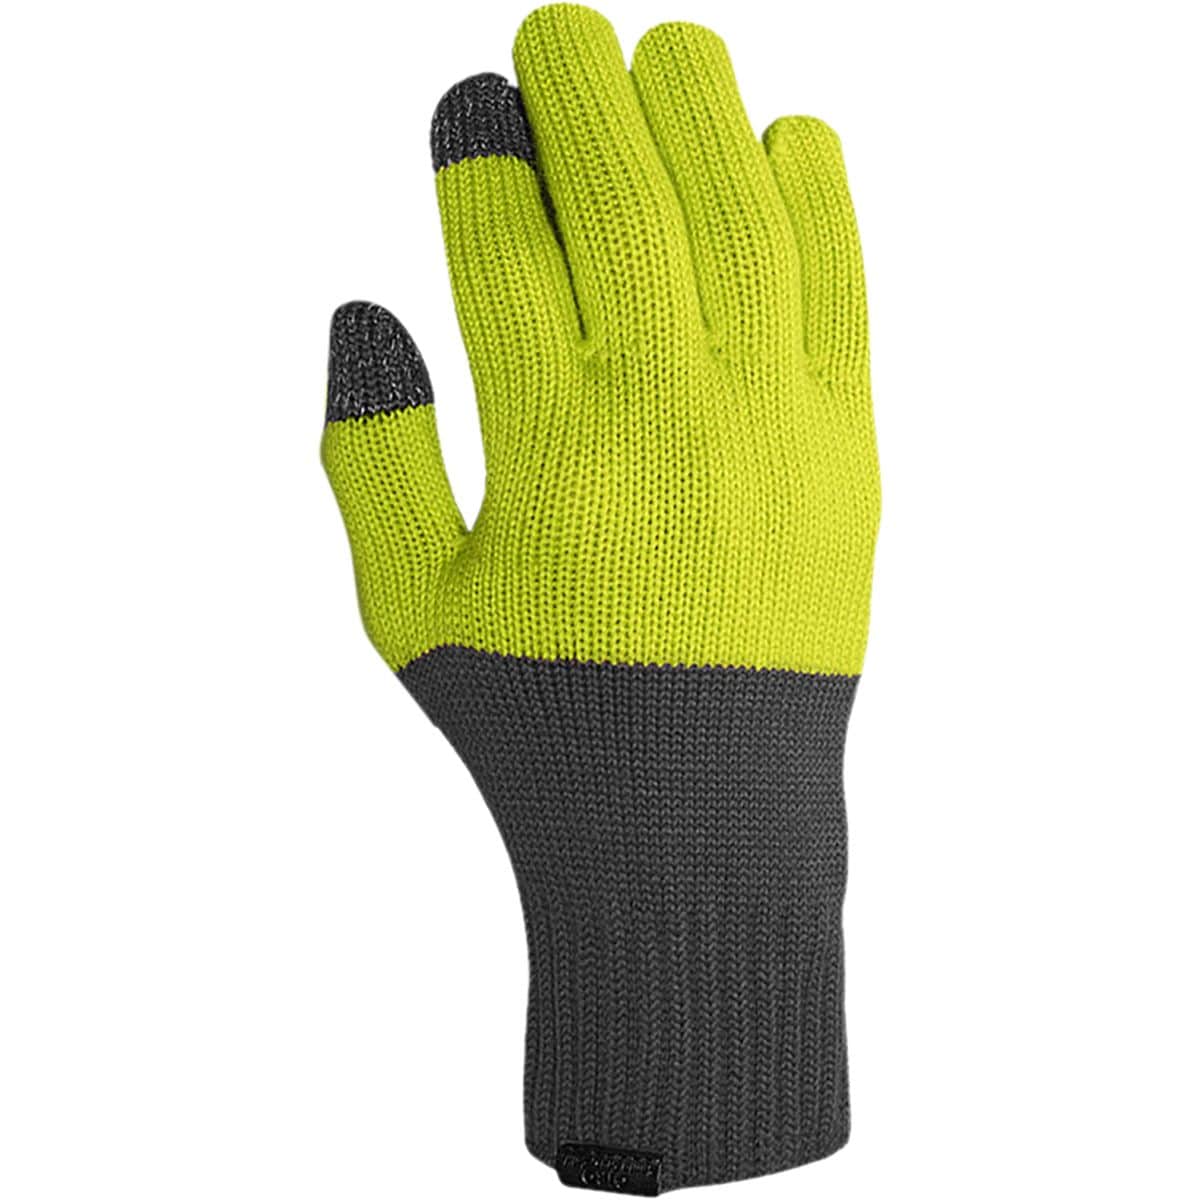 Giro Knit Merino Wool Glove Men's